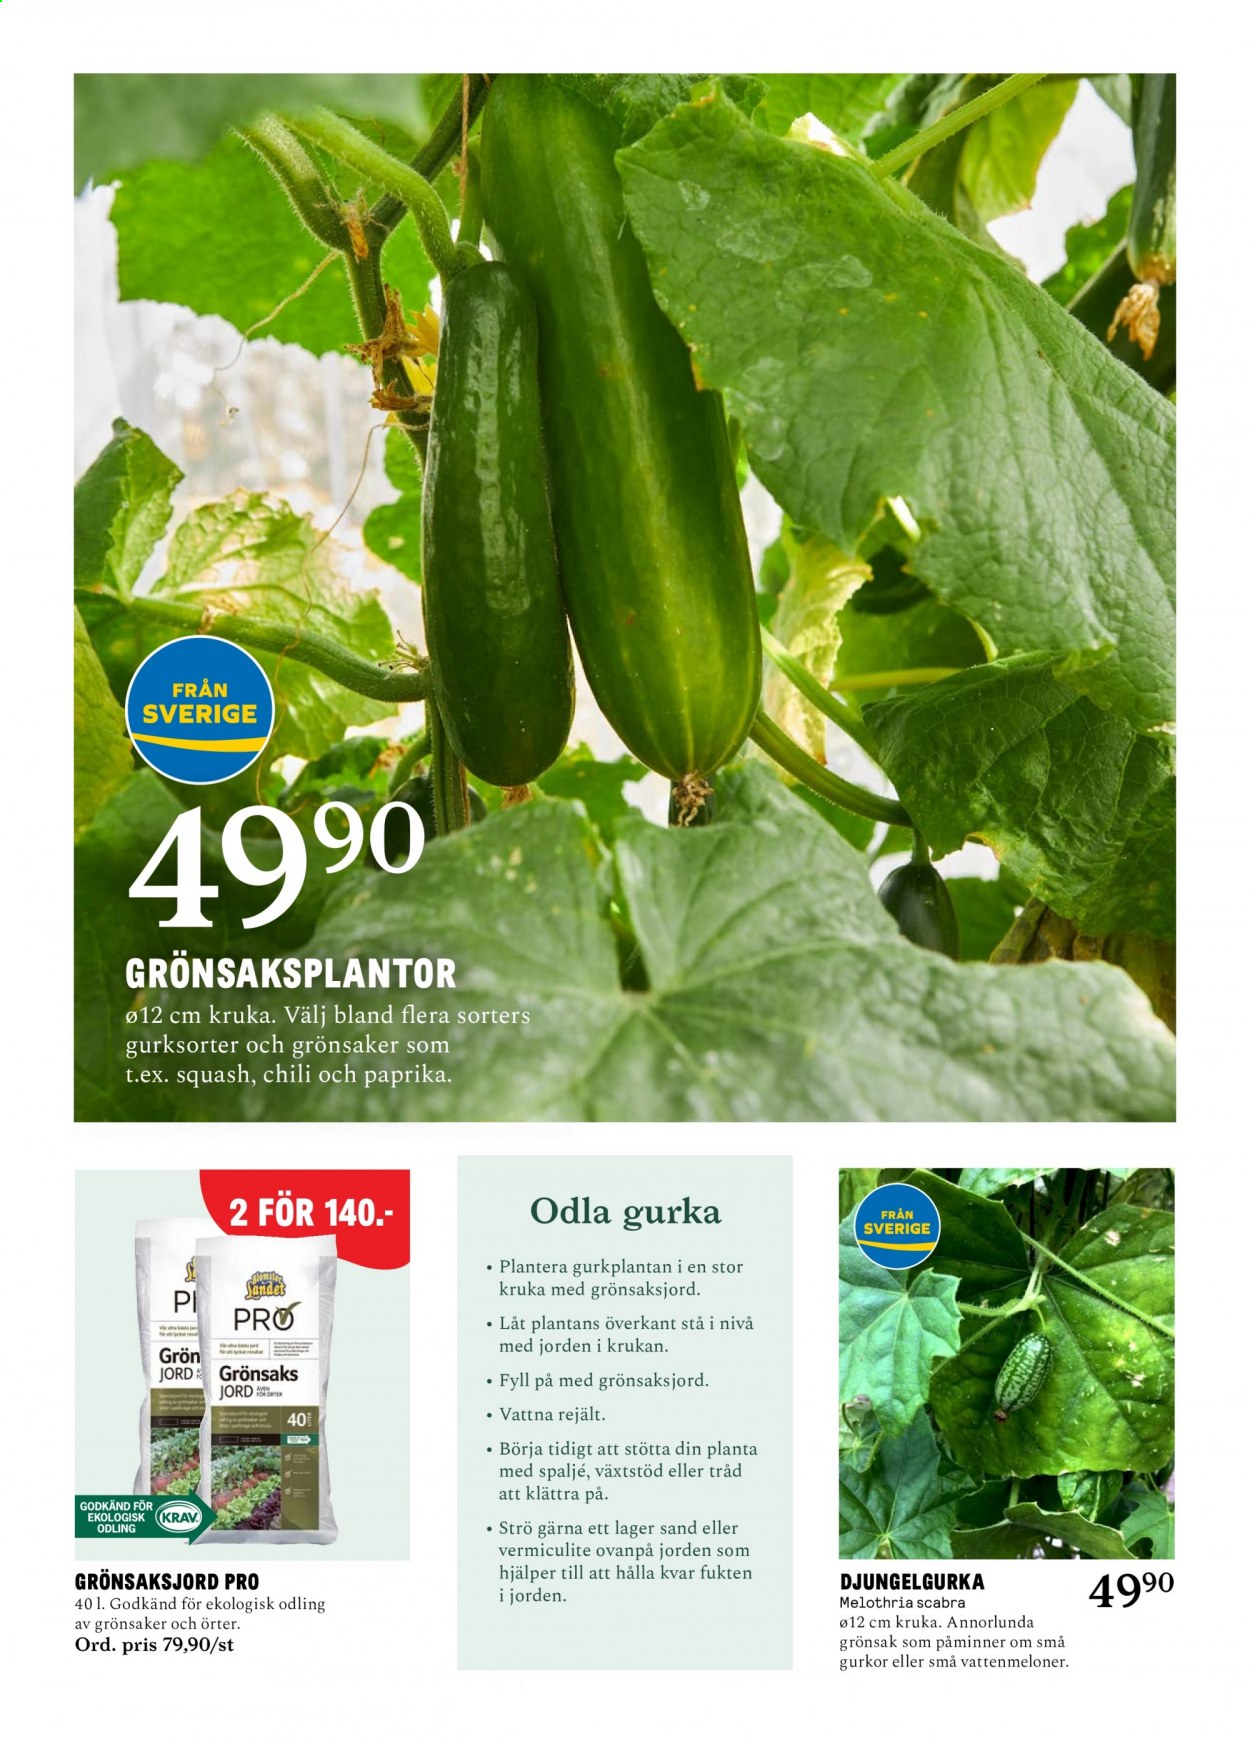 Blomsterlandet reklamblad - 17/5 2021 - 23/5 2021.